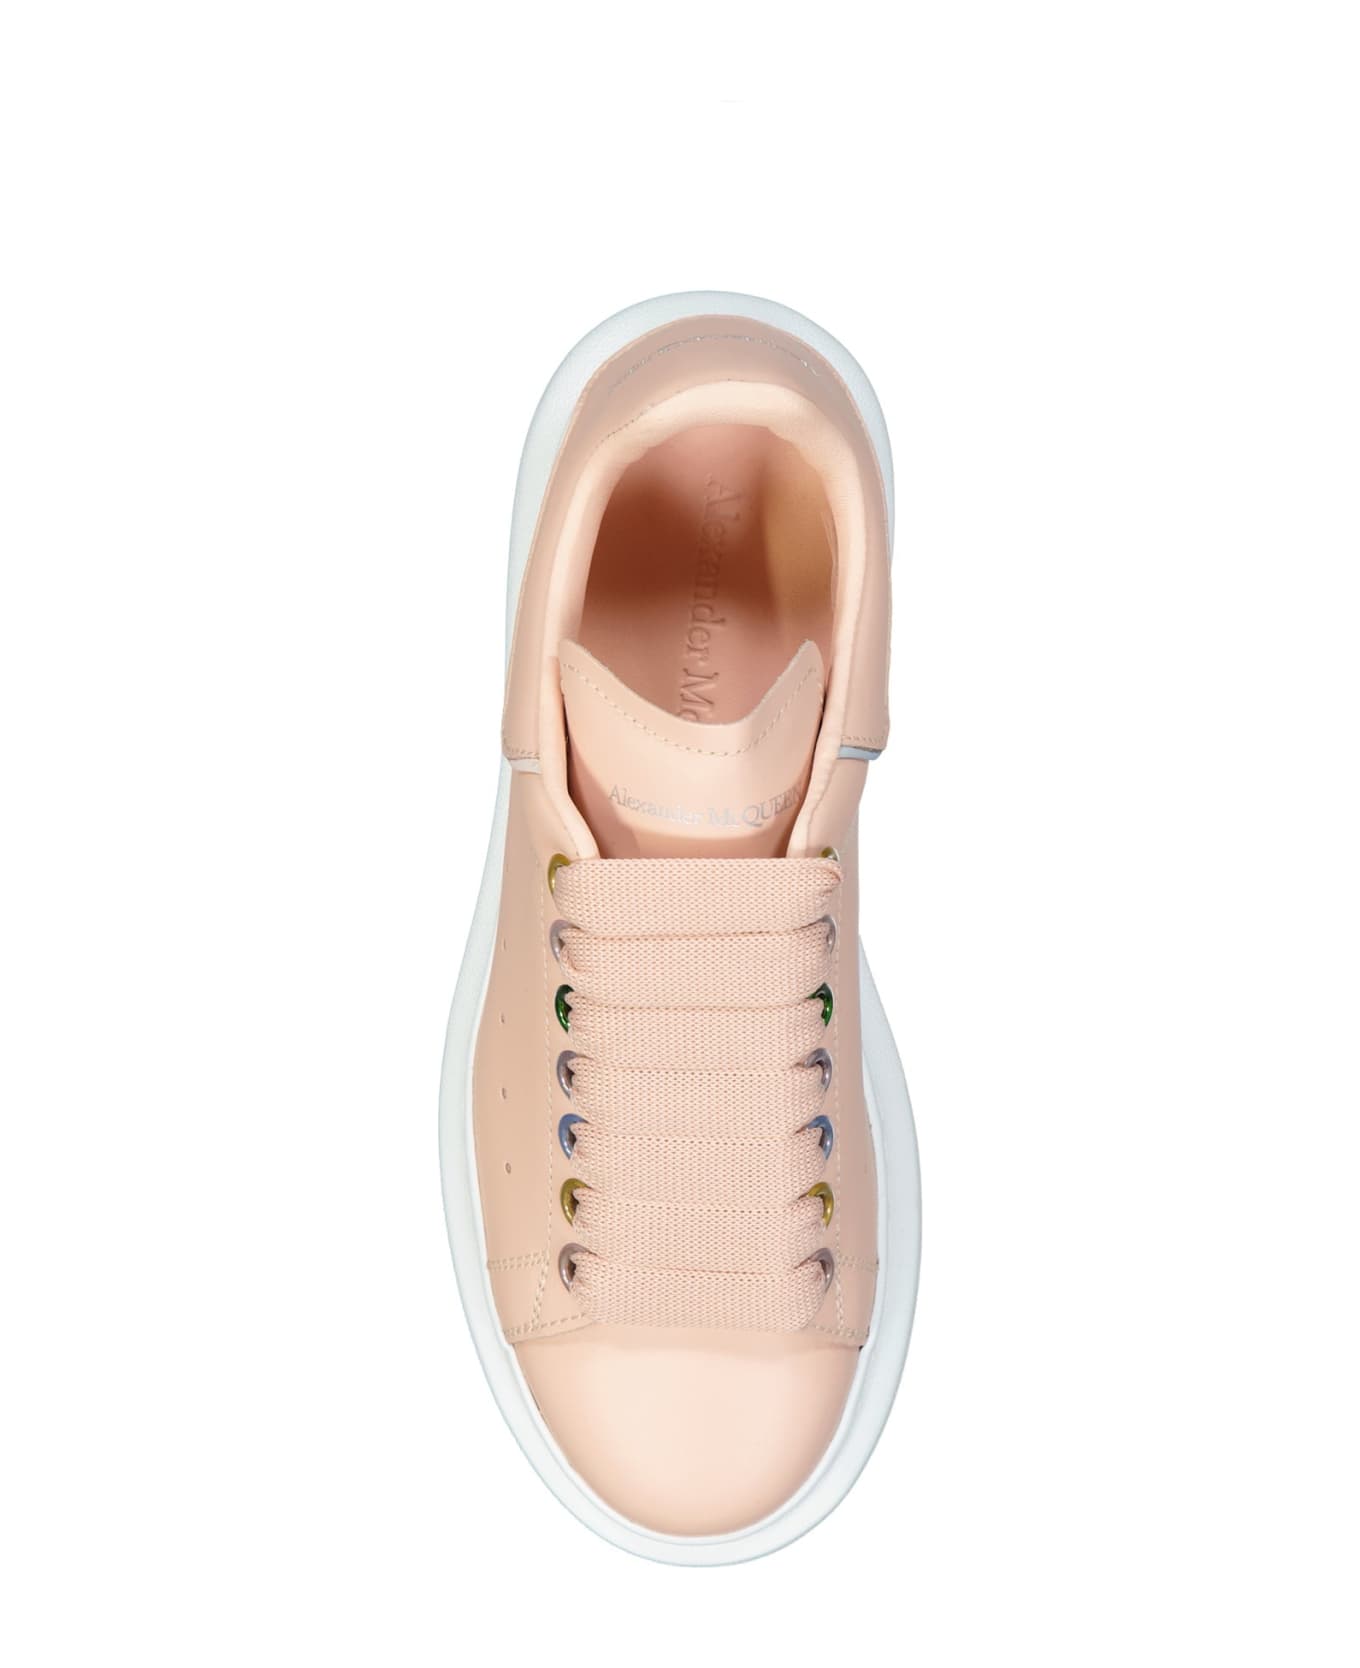 Alexander McQueen Oversized Sneakers - Pink